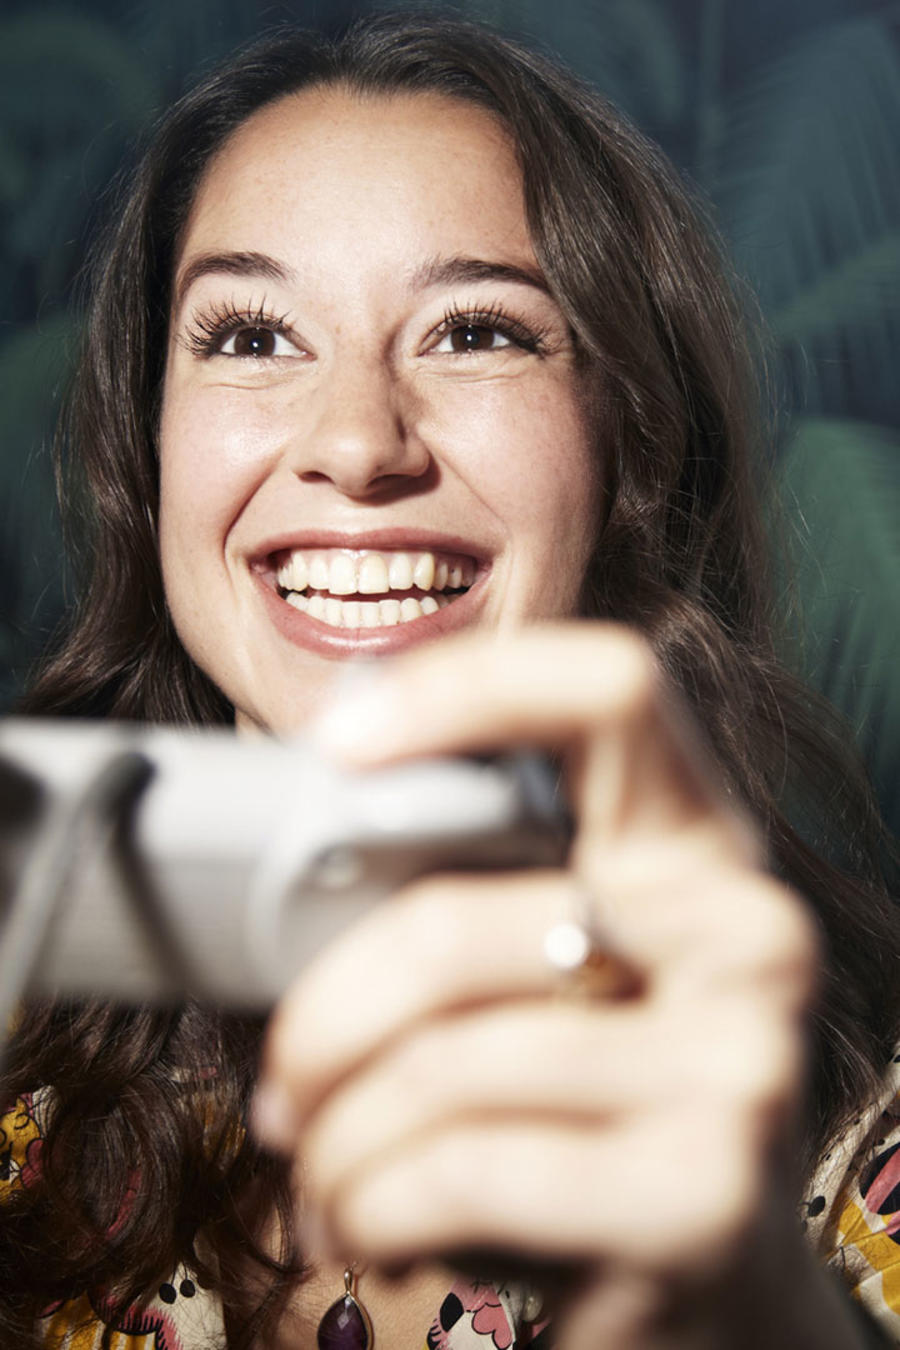 Mujer joven jugando videojuegos 